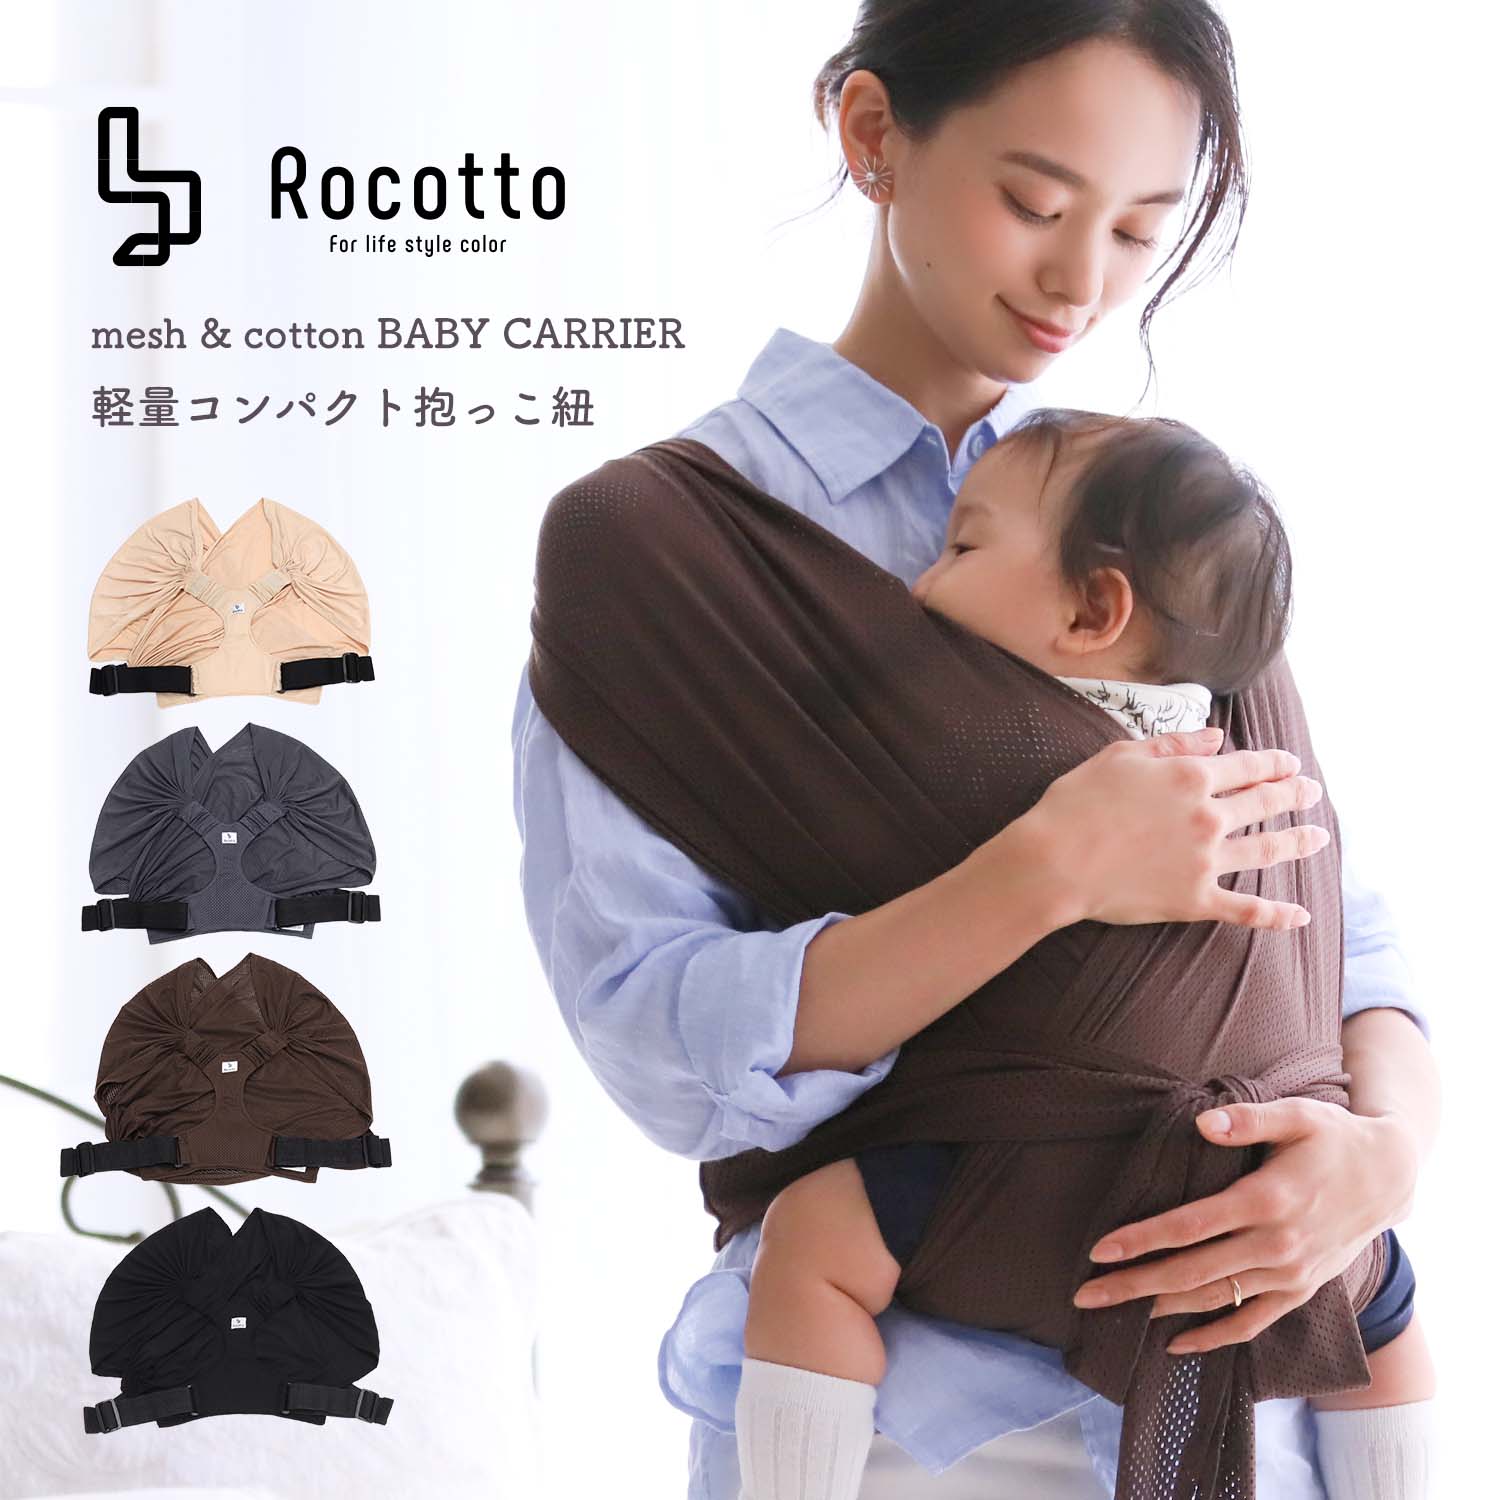 Rocotto 抱っこ紐 メッシュ コットン フリーサイズ MRG JAPAN Direct